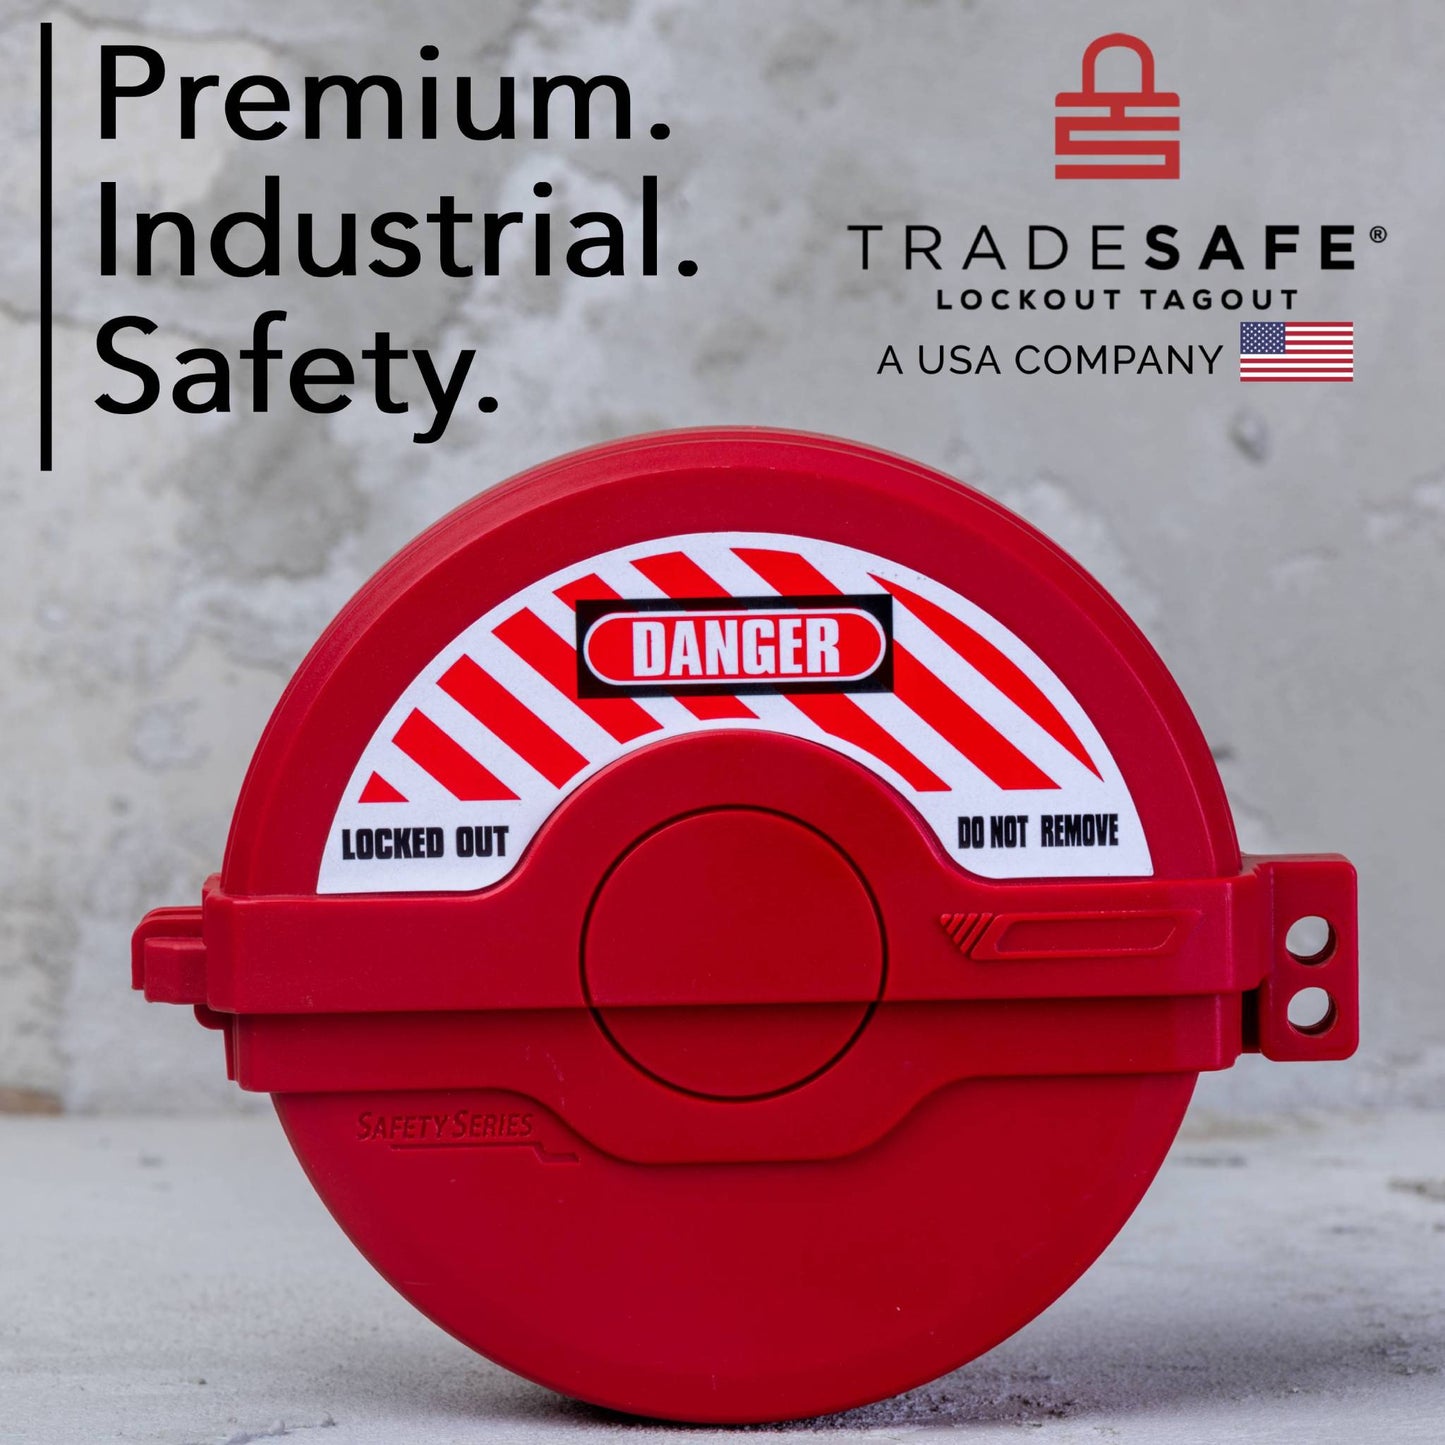 tradesafe lockout tagout gate valve brand image